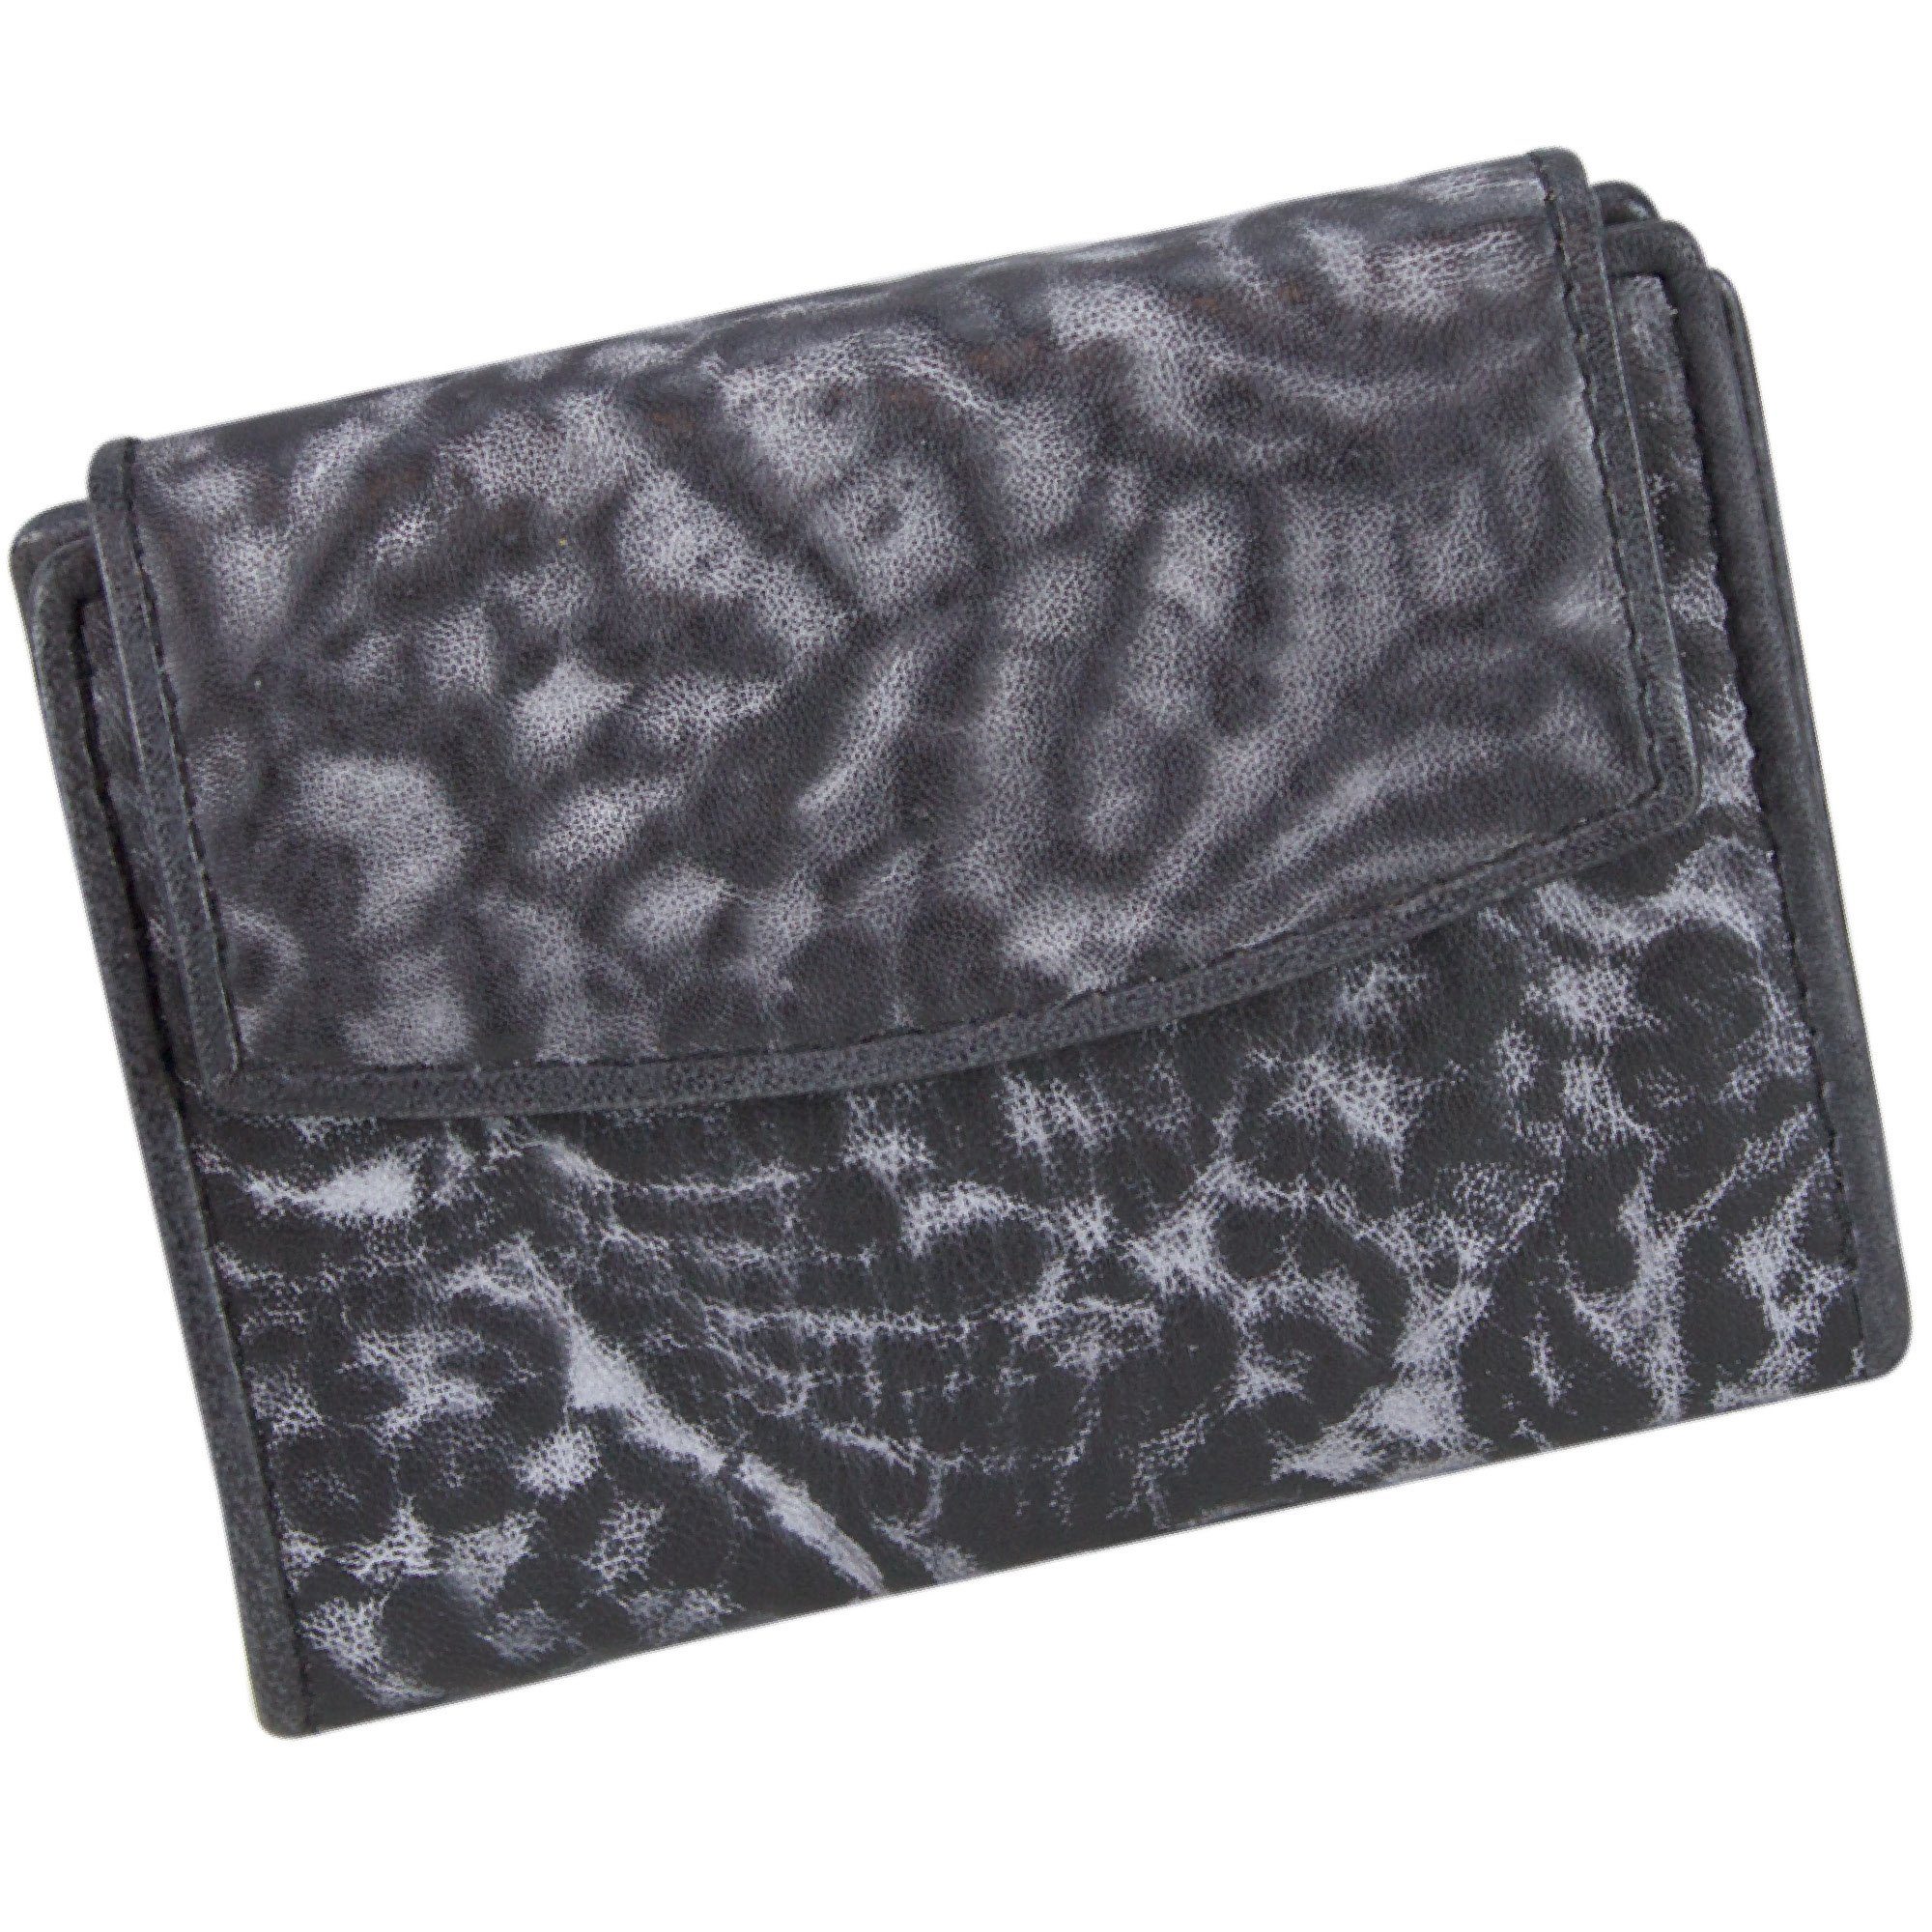 Sunsa Geldbörse Kleine Leder Geldbeutel Vintage Portemonnaie Brieftasche Damen, echt Leder, Vintage Style, mit RFID-Schutz, zeitlos schwarz